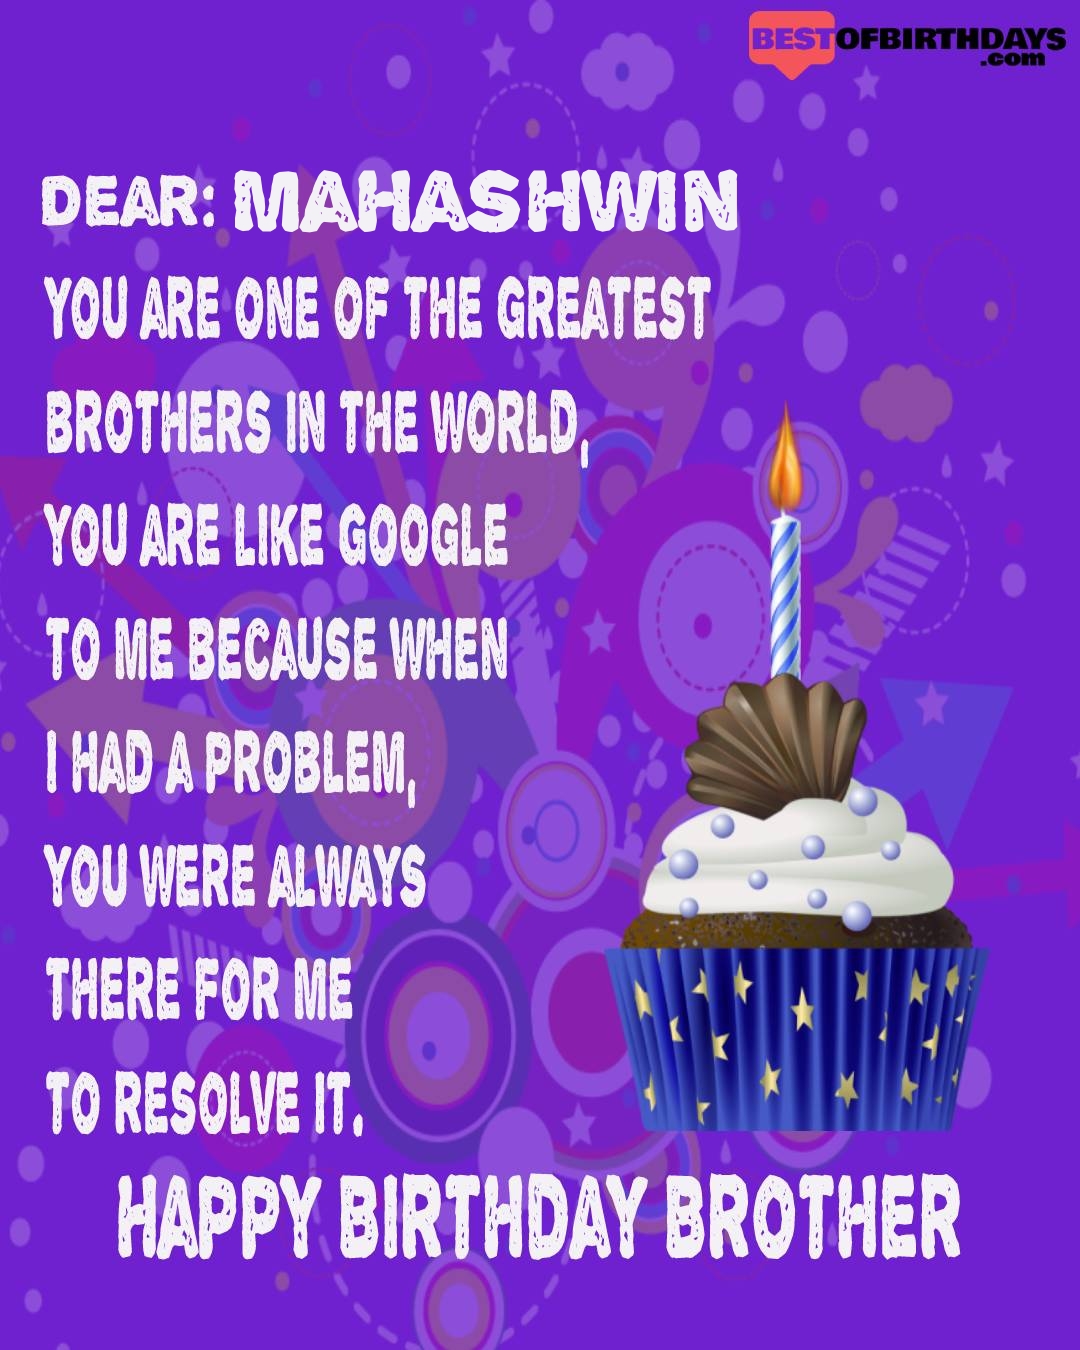 Happy birthday mahashwin bhai brother bro